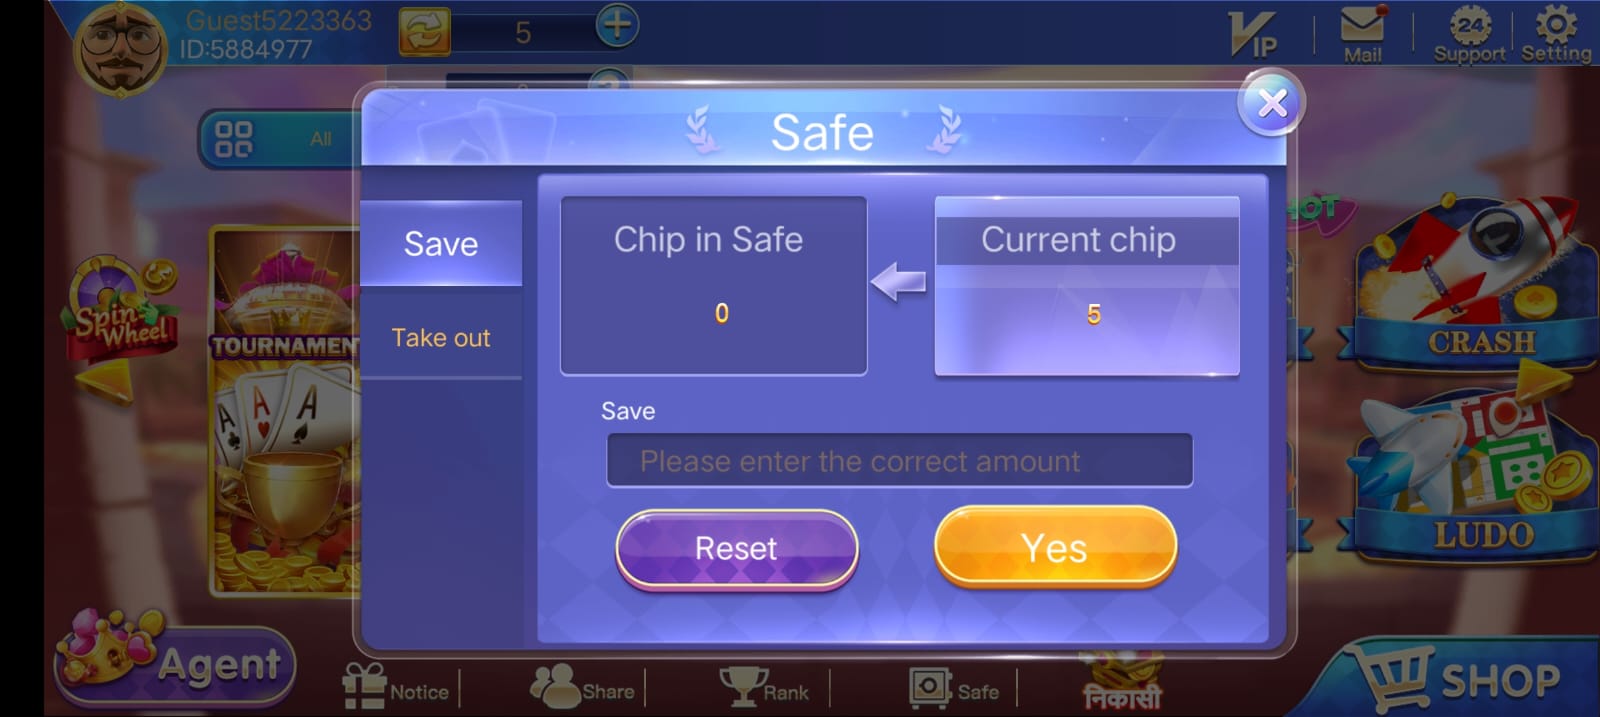 Safe Button Program In Rummy Flash Apk